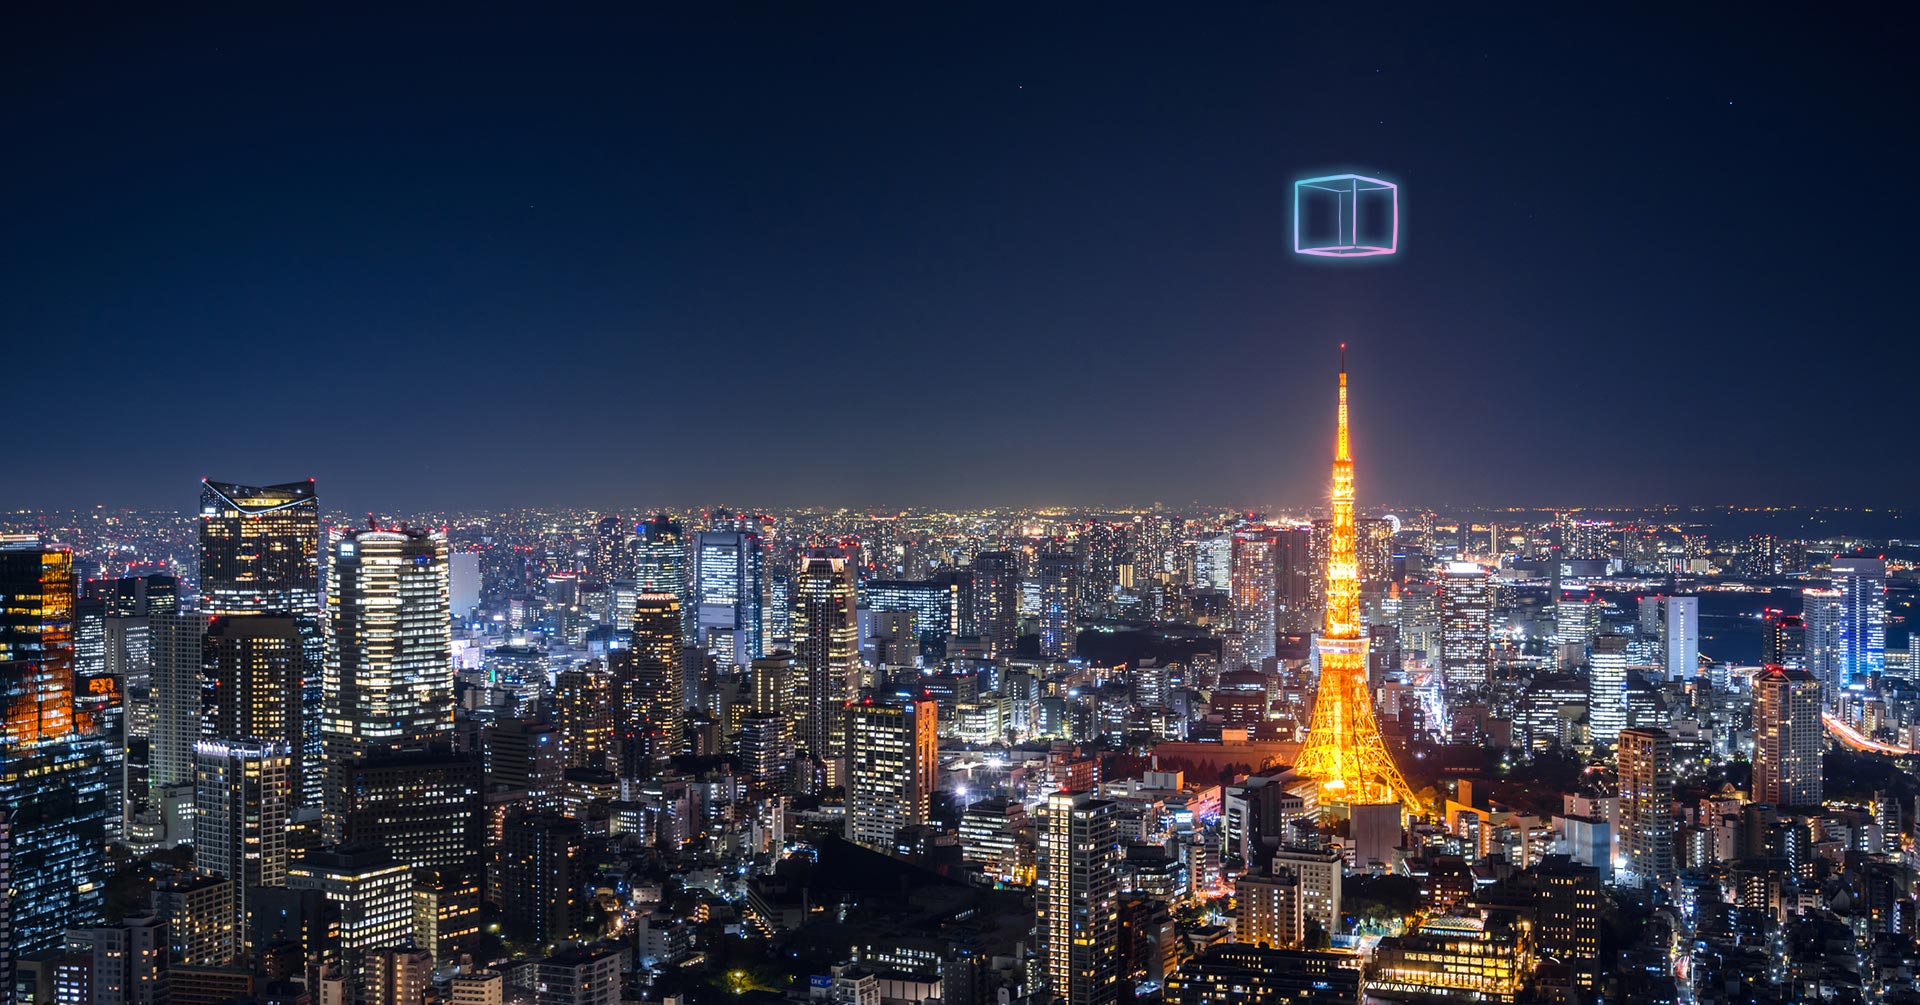 2021年8月には、東京上空に仮設営されたキューブ上で、音声AR空間での世界初のEDMライブイベント「東京上空フェス」を開催した。